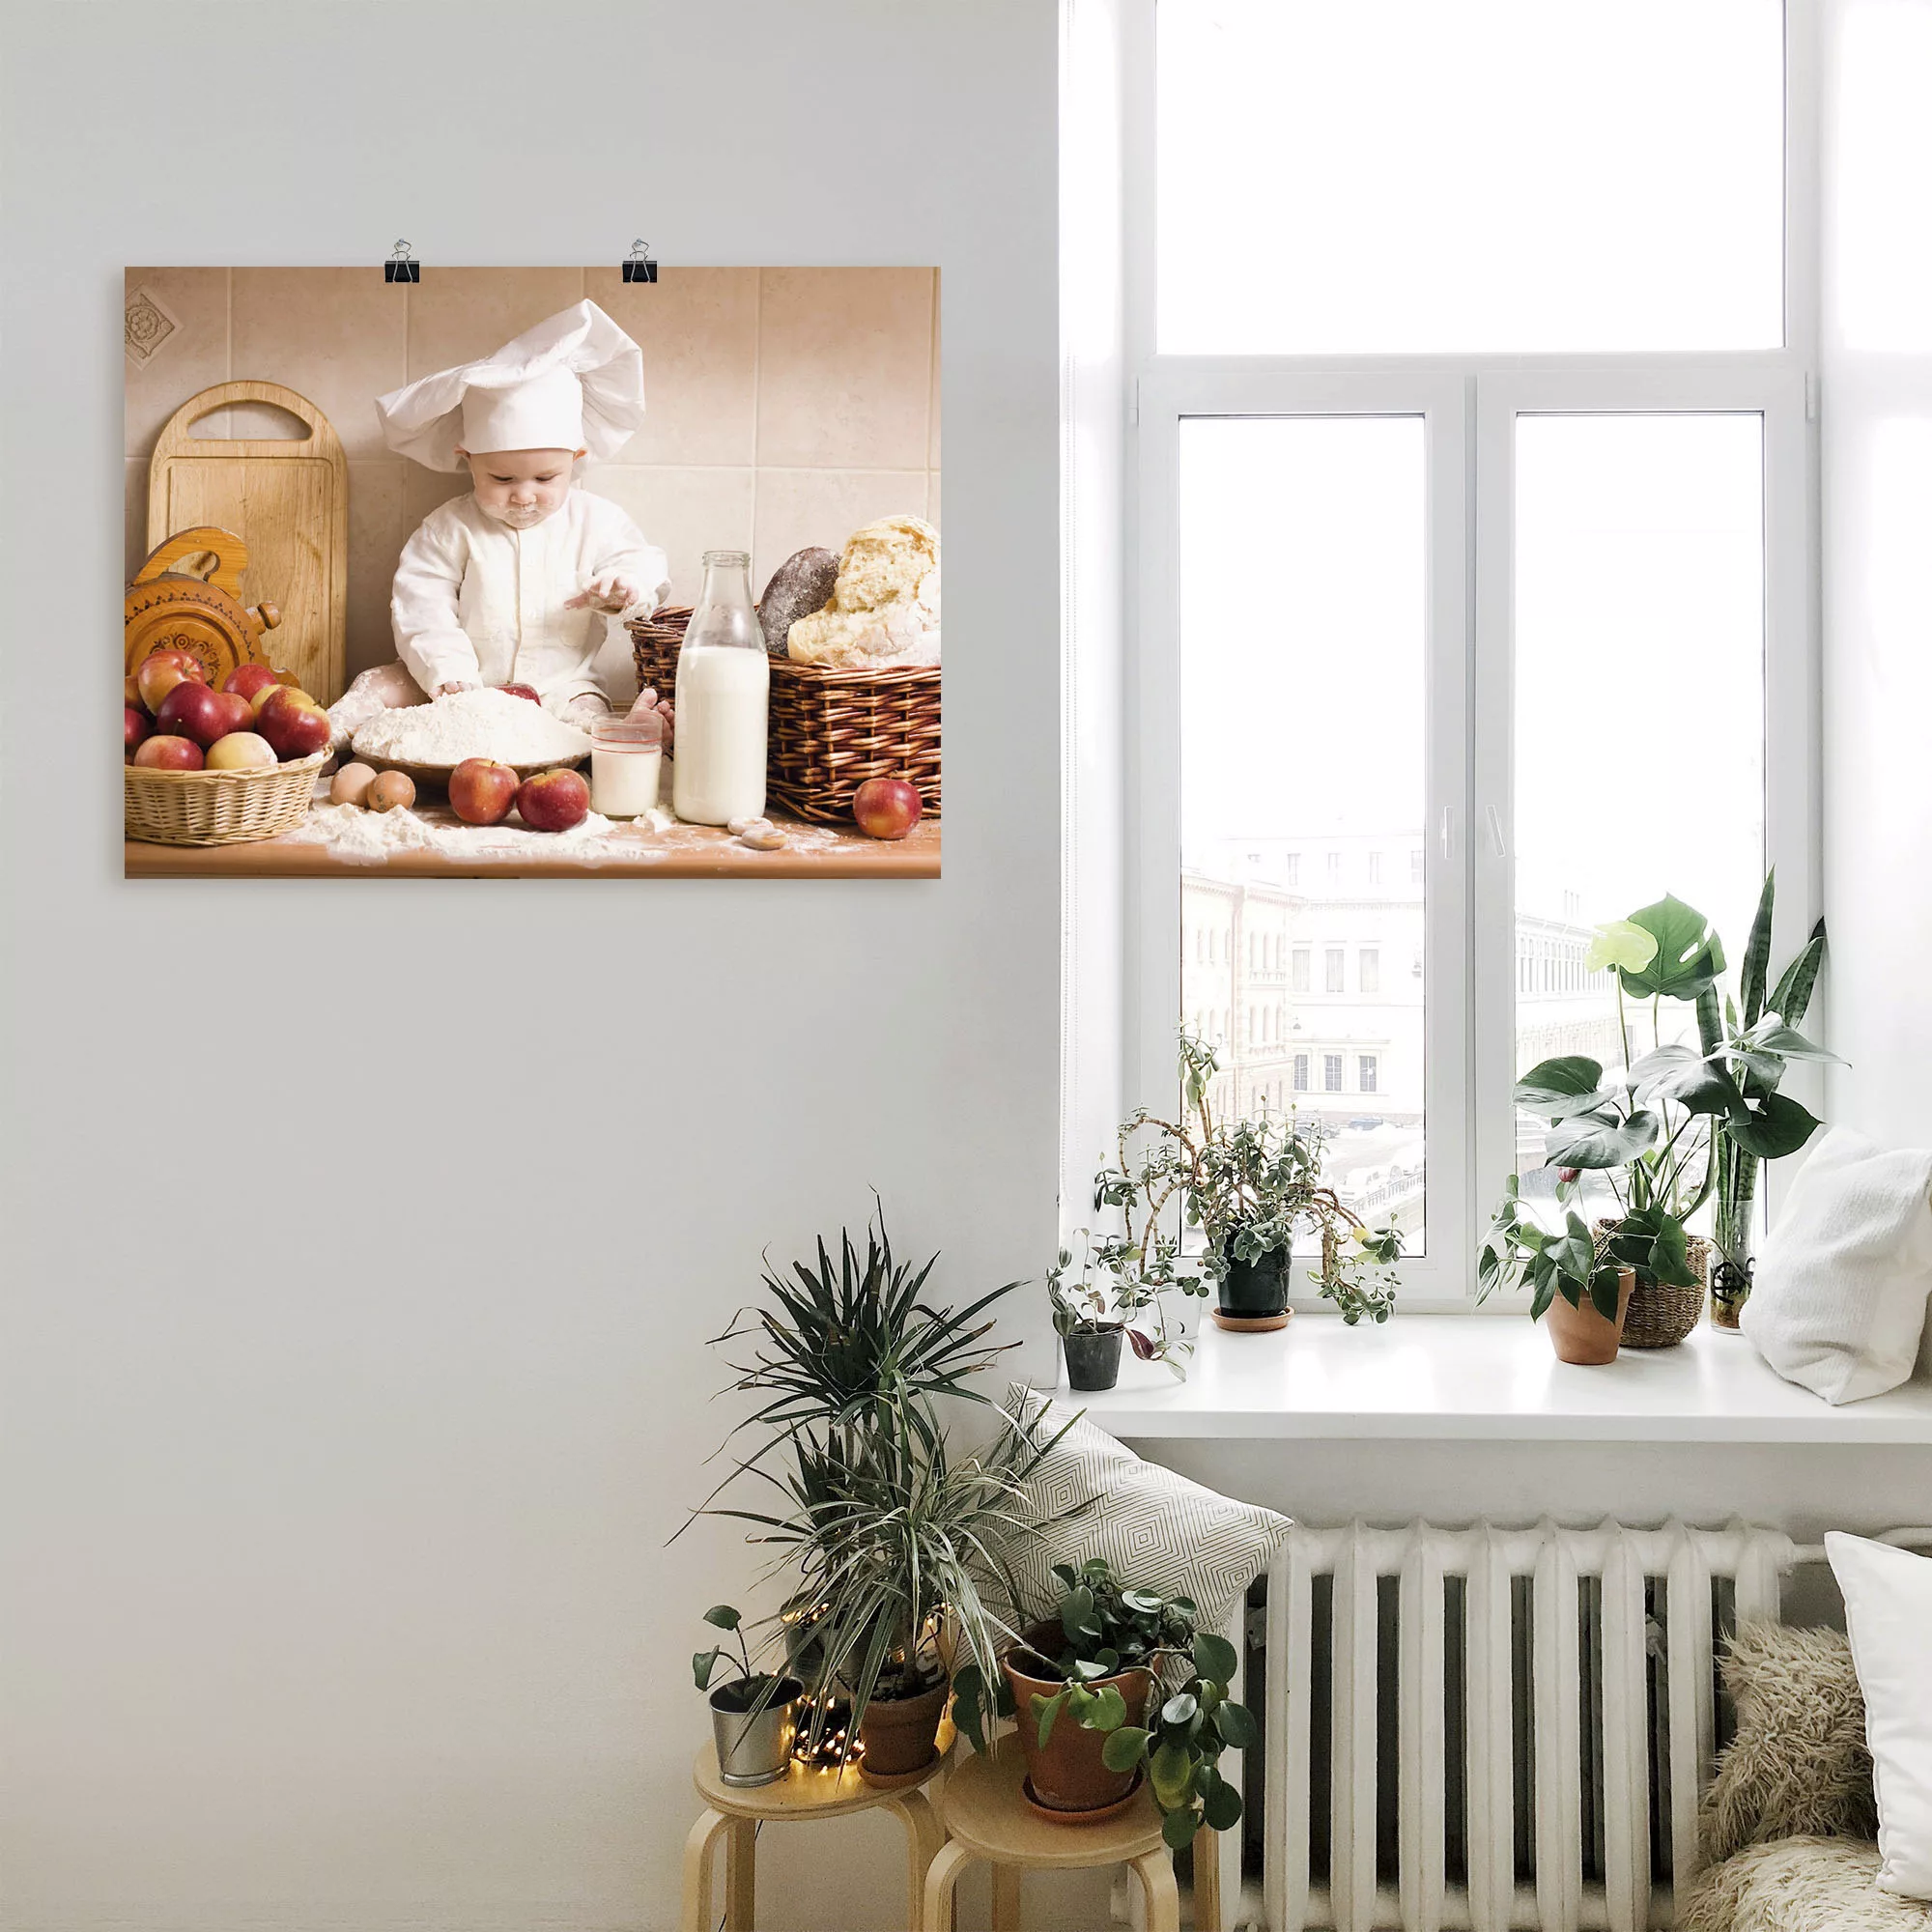 Artland Wandbild "Küche Junge Kind Backen", Bilder von Kindern, (1 St.), al günstig online kaufen